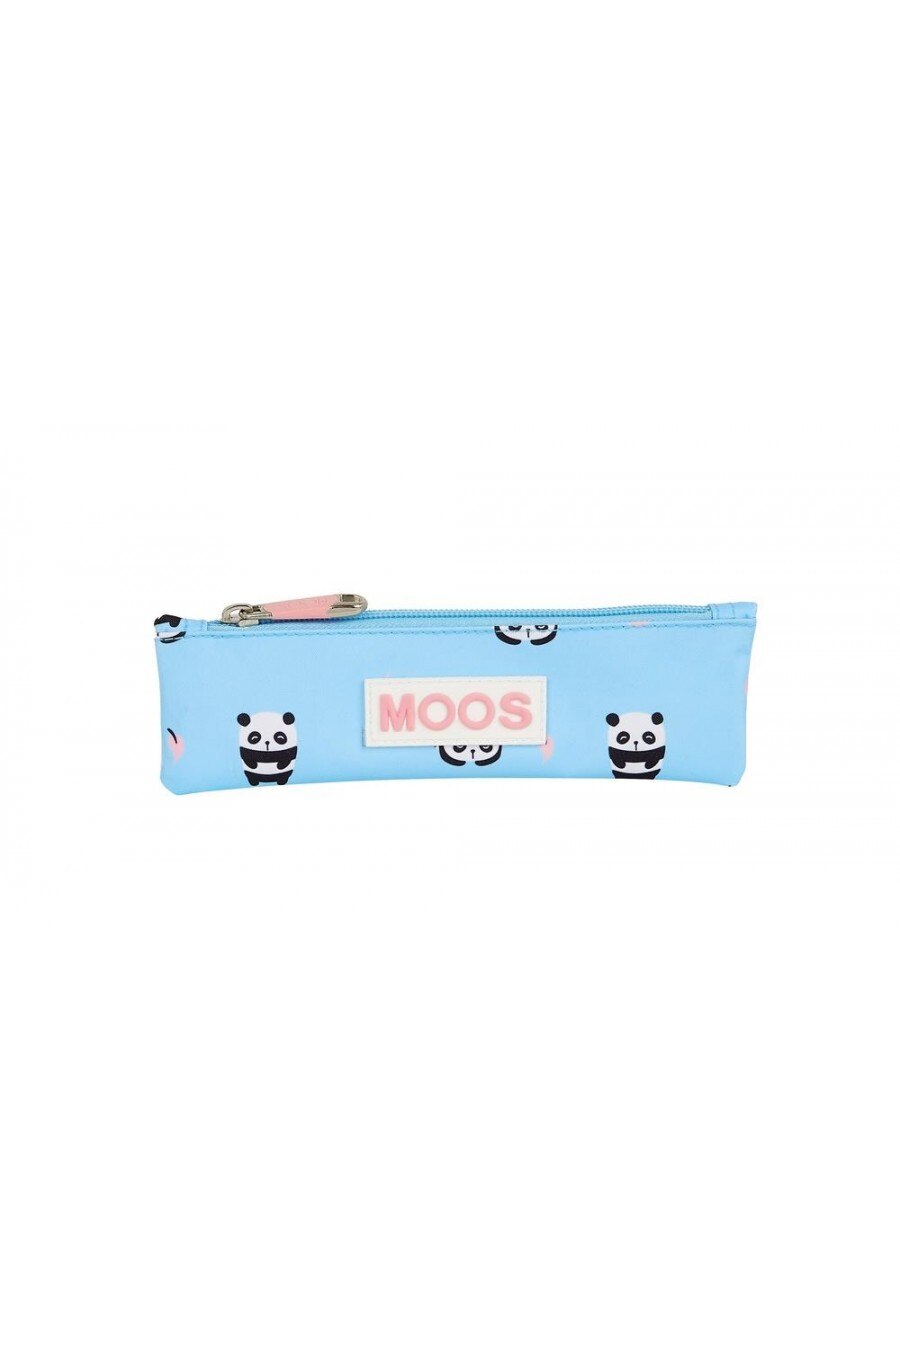 Moos Slim Case 812071025